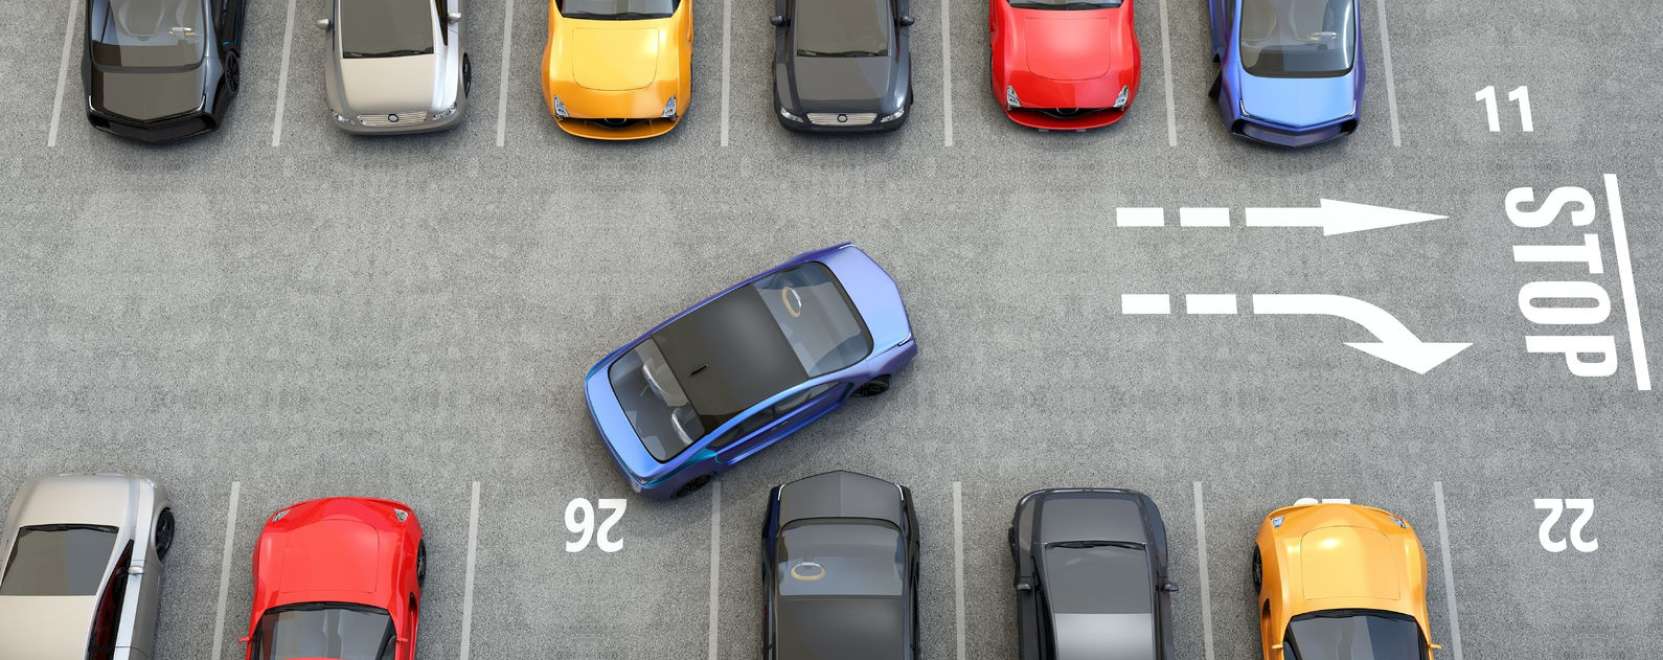 Parkl: így parkolhat okosan